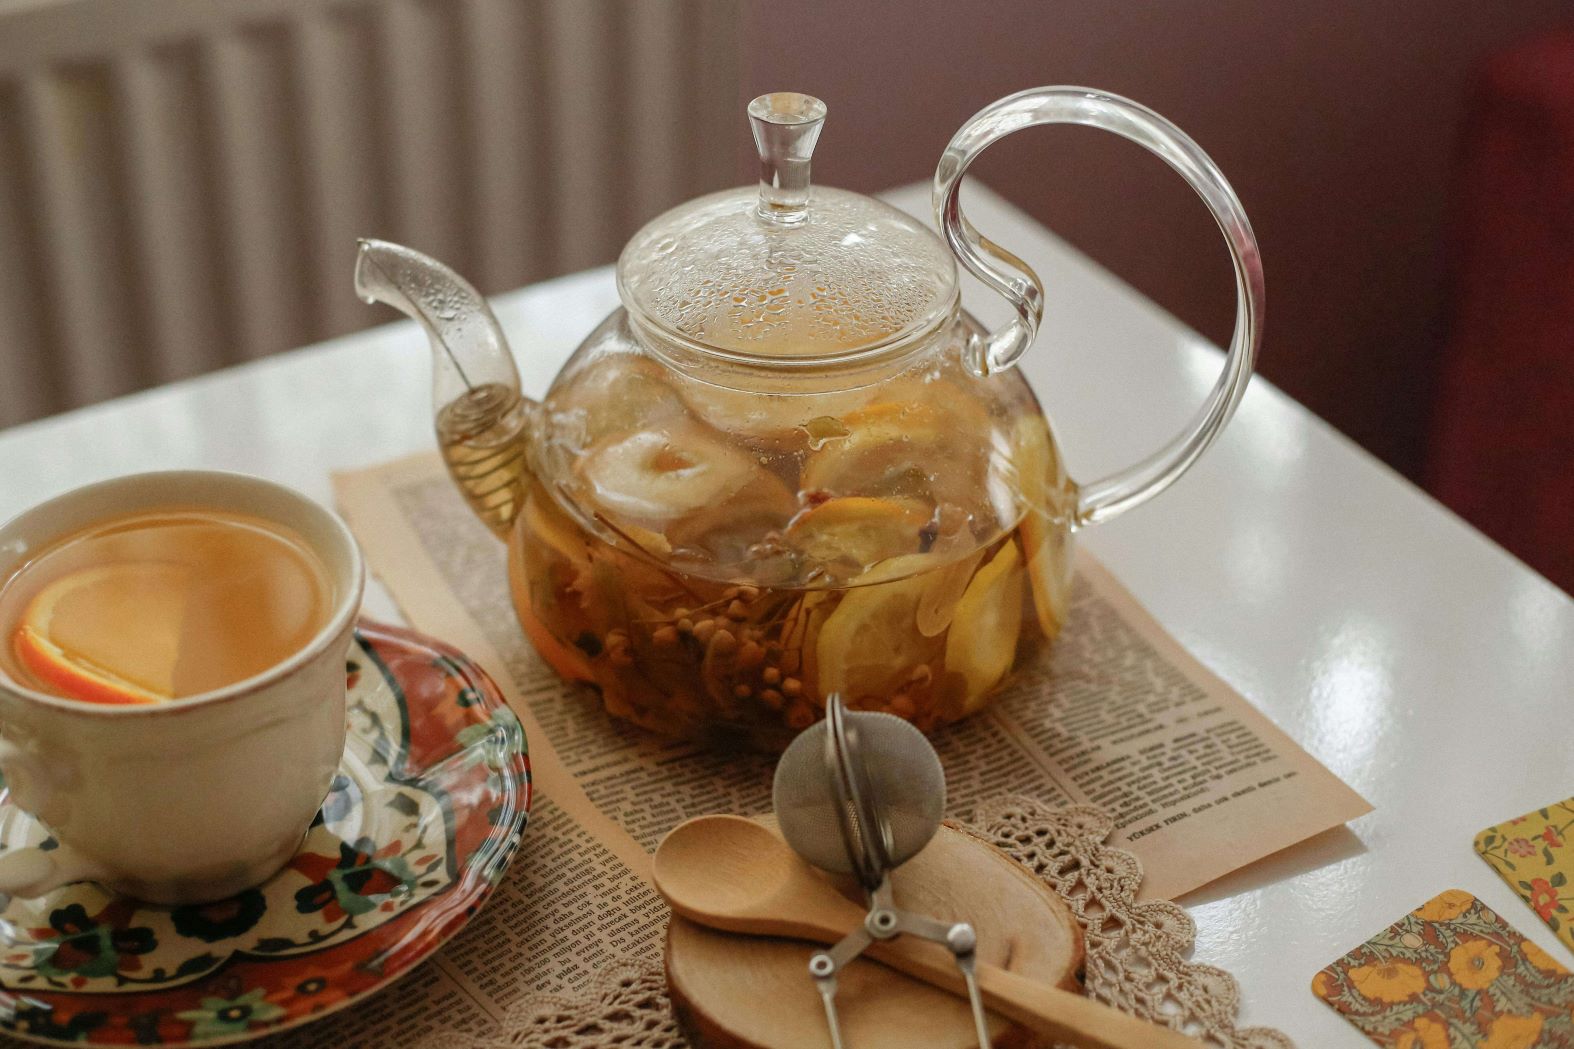 Quali sono gli accessori essenziali per la preparazione del tè sfuso? Qual è il tipo di teiera migliore? Rispondiamo a queste domande e vi consigliamo i migliori accessori.